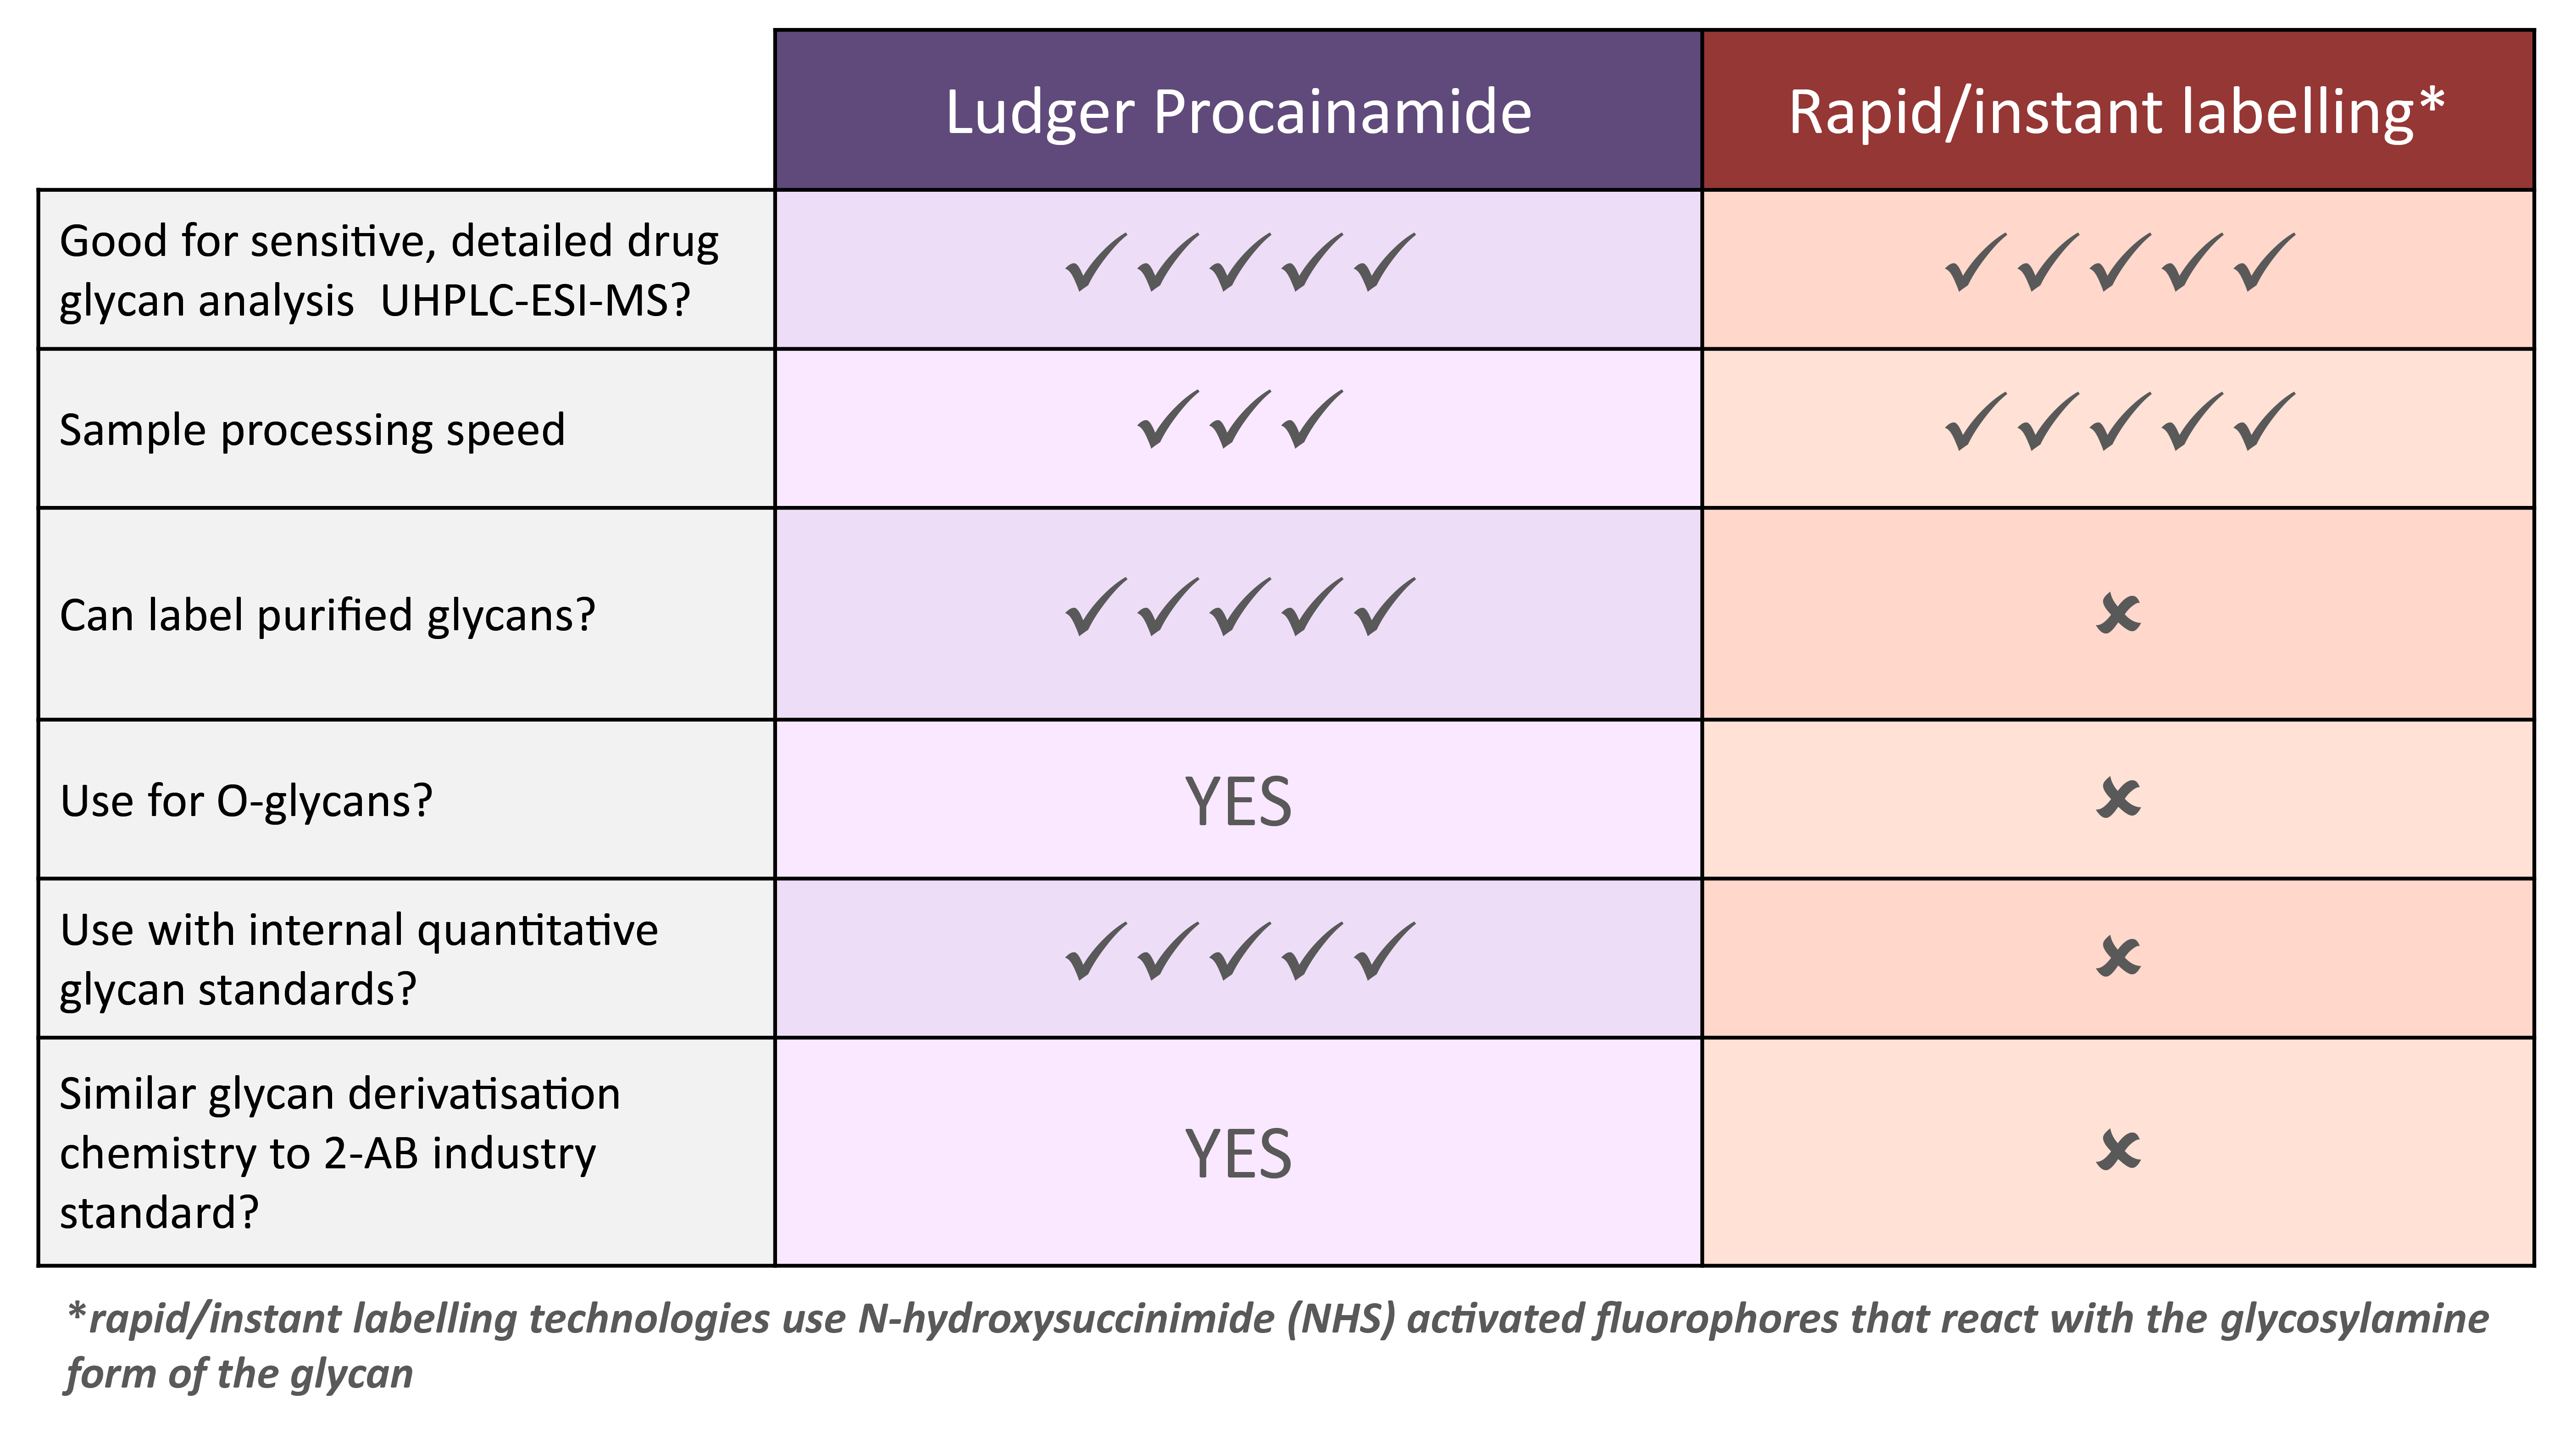 Ludger Procainamide Comparison Table